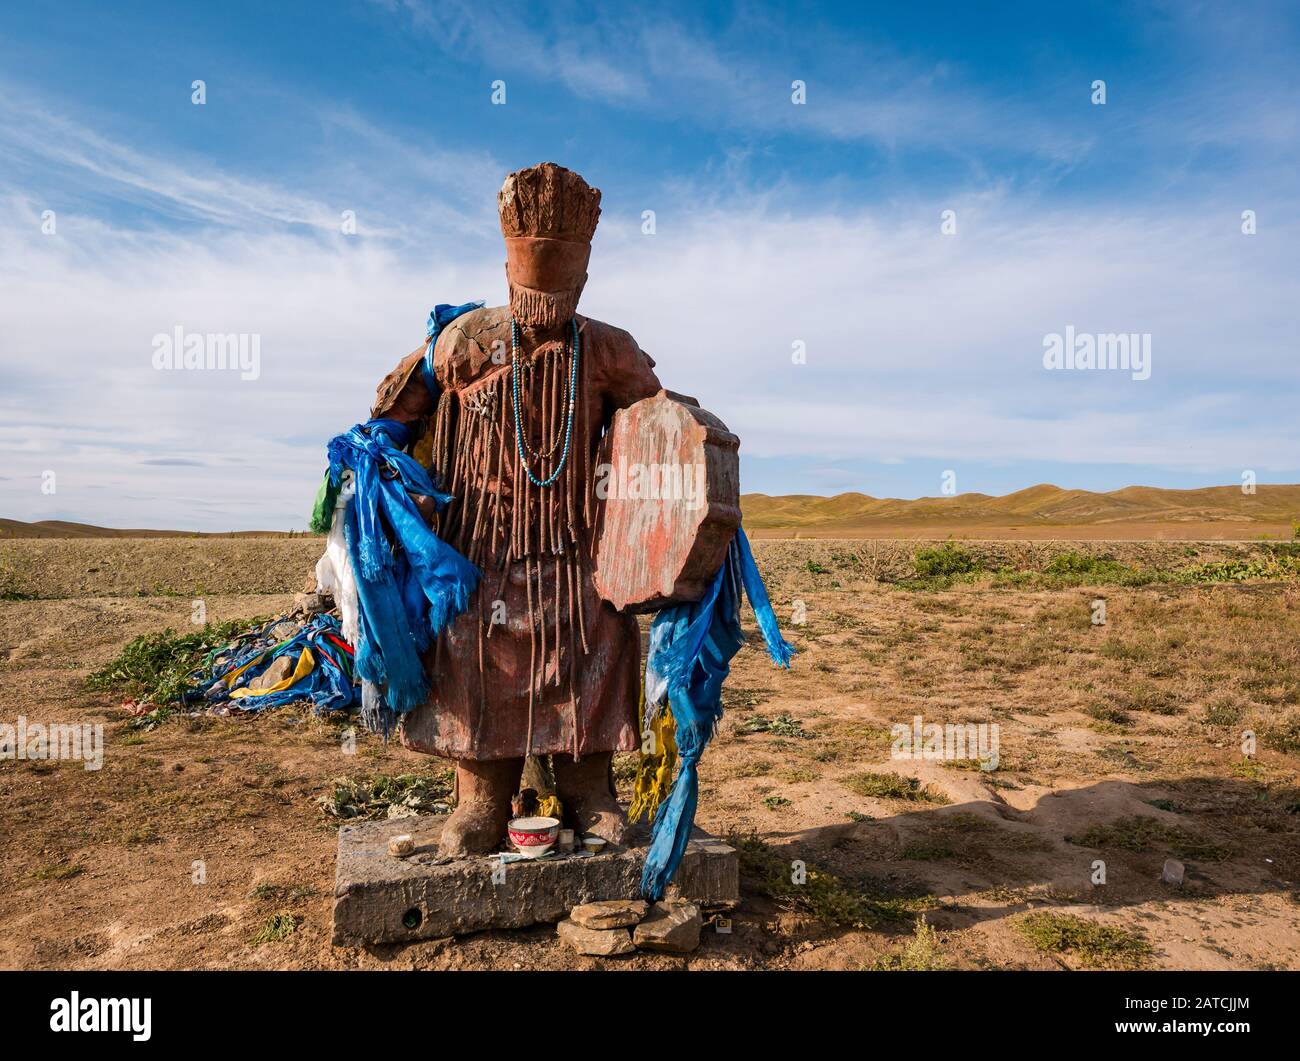 Statue du chaman du charisme mongol avec foulards de prière en soie bleue au bord de la route à la steppe, Mongolie, Asie Banque D'Images